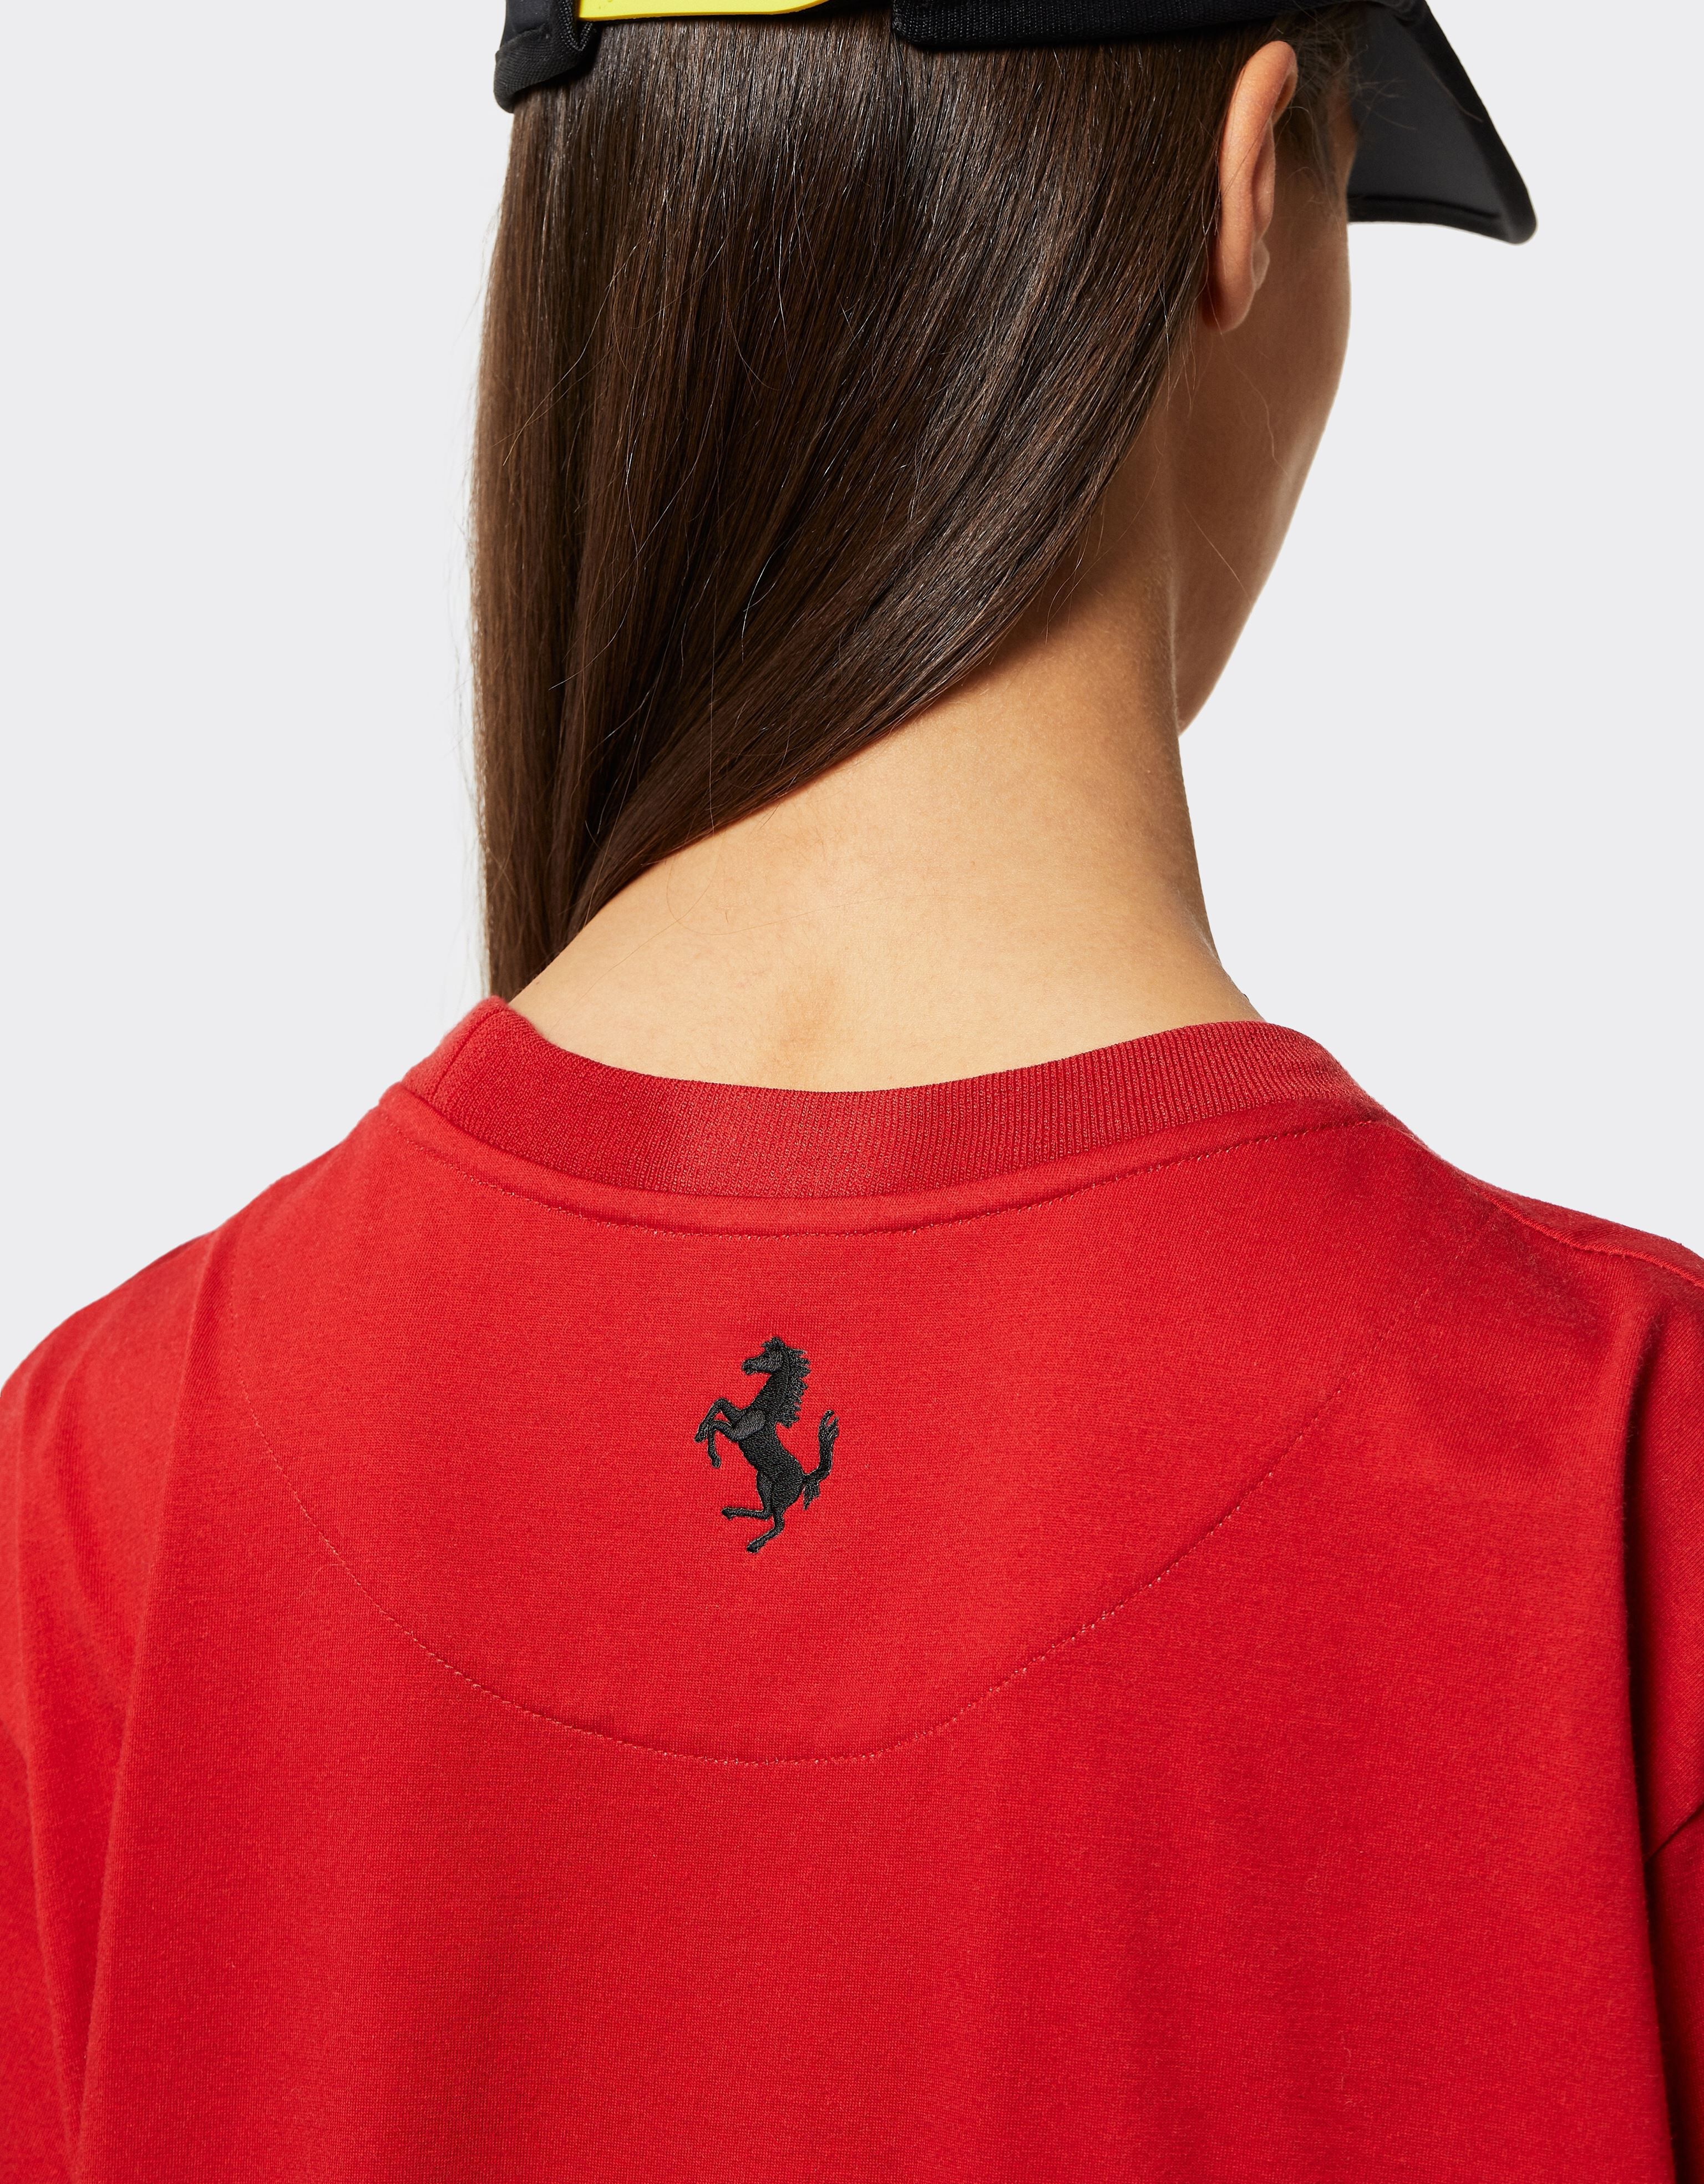 Ferrari T-shirt en coton avec logo Ferrari Rosso Corsa 47036f